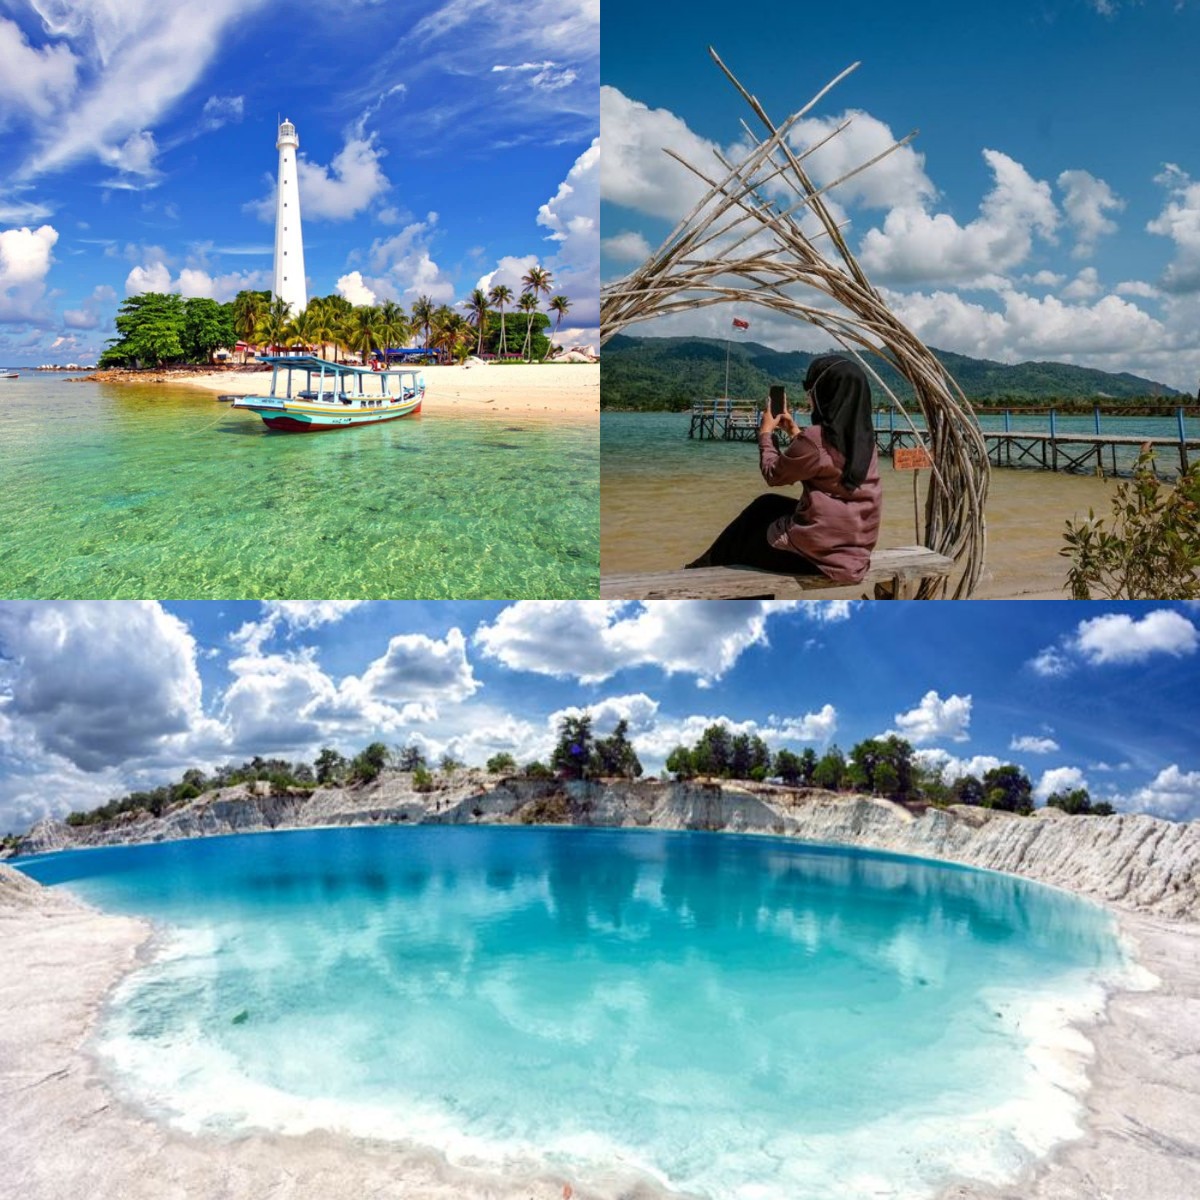 Inilah Surganya Dunia yang Ada di Indonesia, Wisata Bangka Belitung Mempesona!